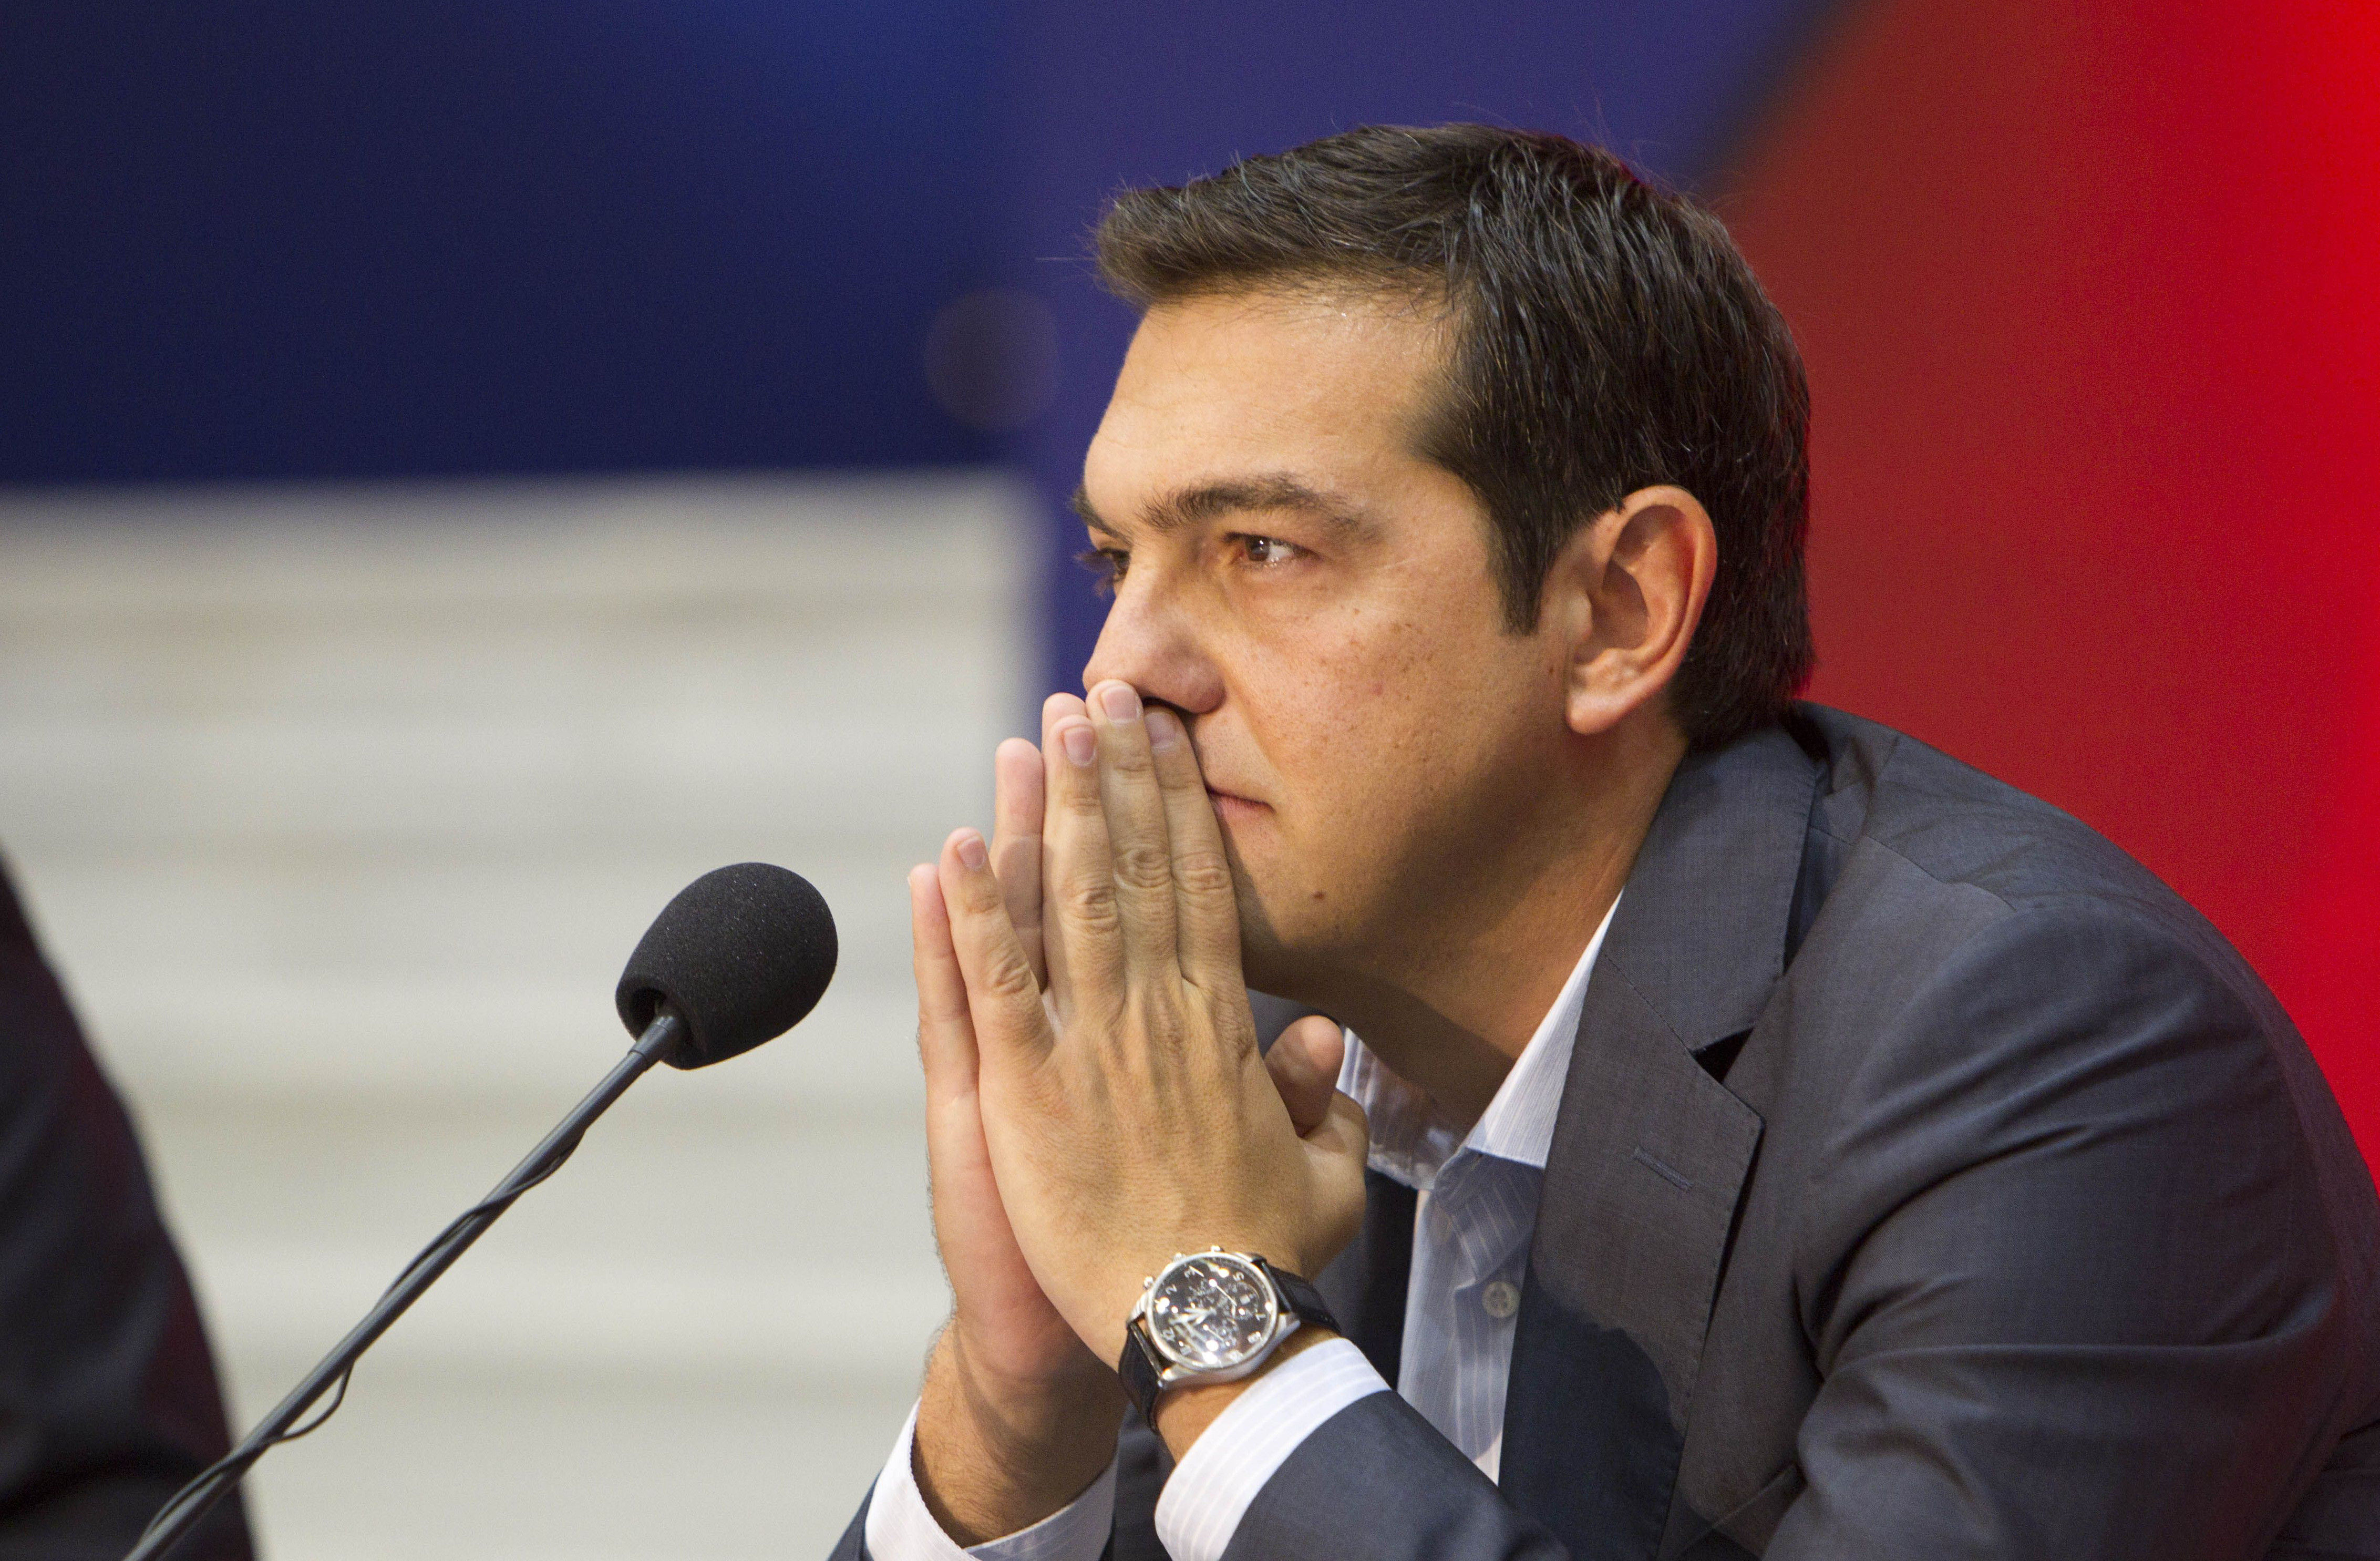 Y bueno, un dirigente más pequeño pero muy comentado en los últimos meses: Alexis Tsipras.